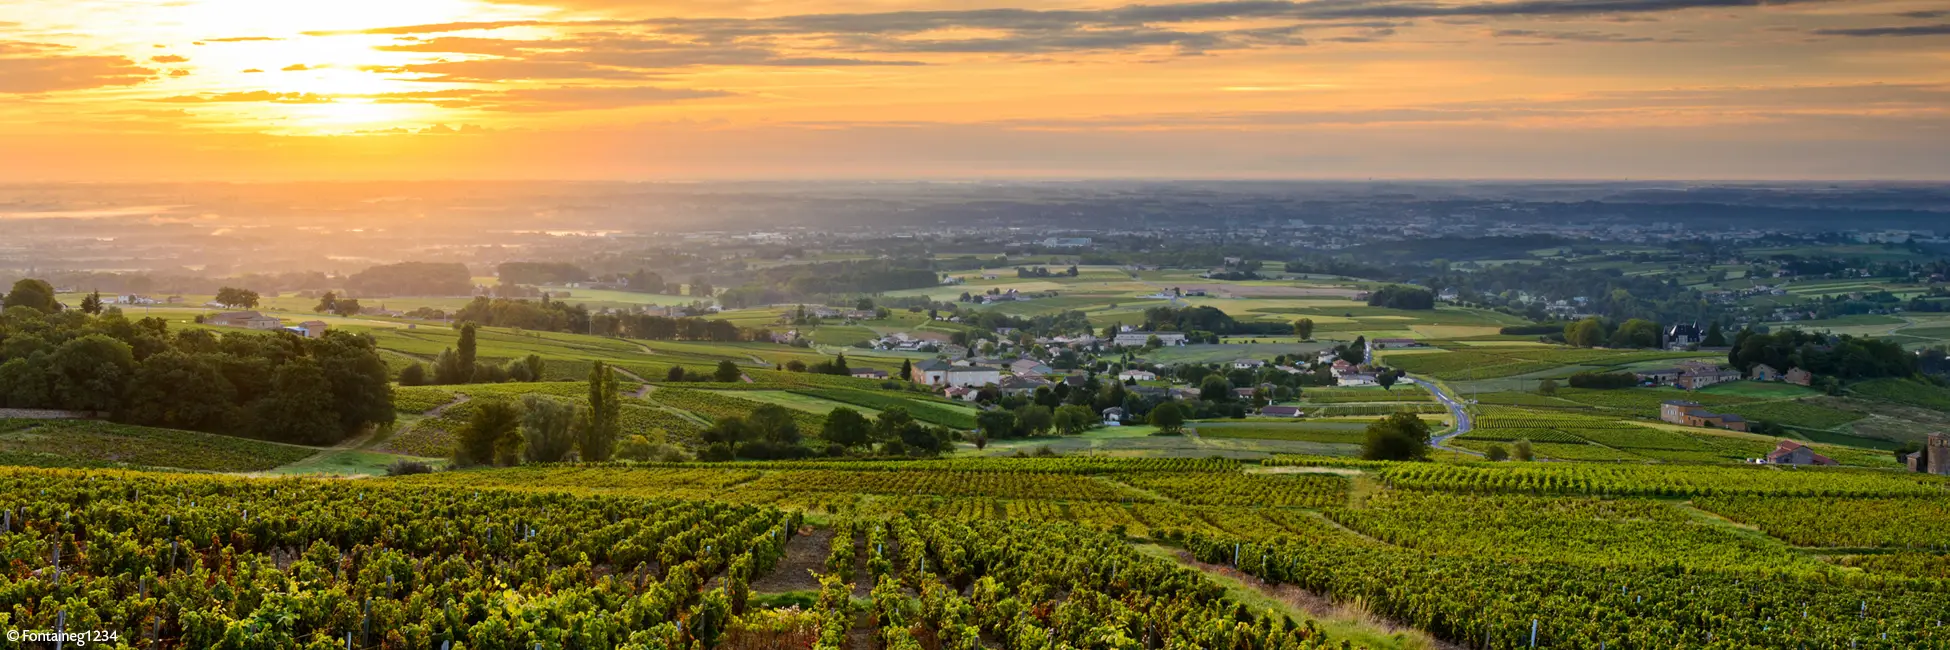 Slider coucher du soleil sur vignes de Beaujolais 